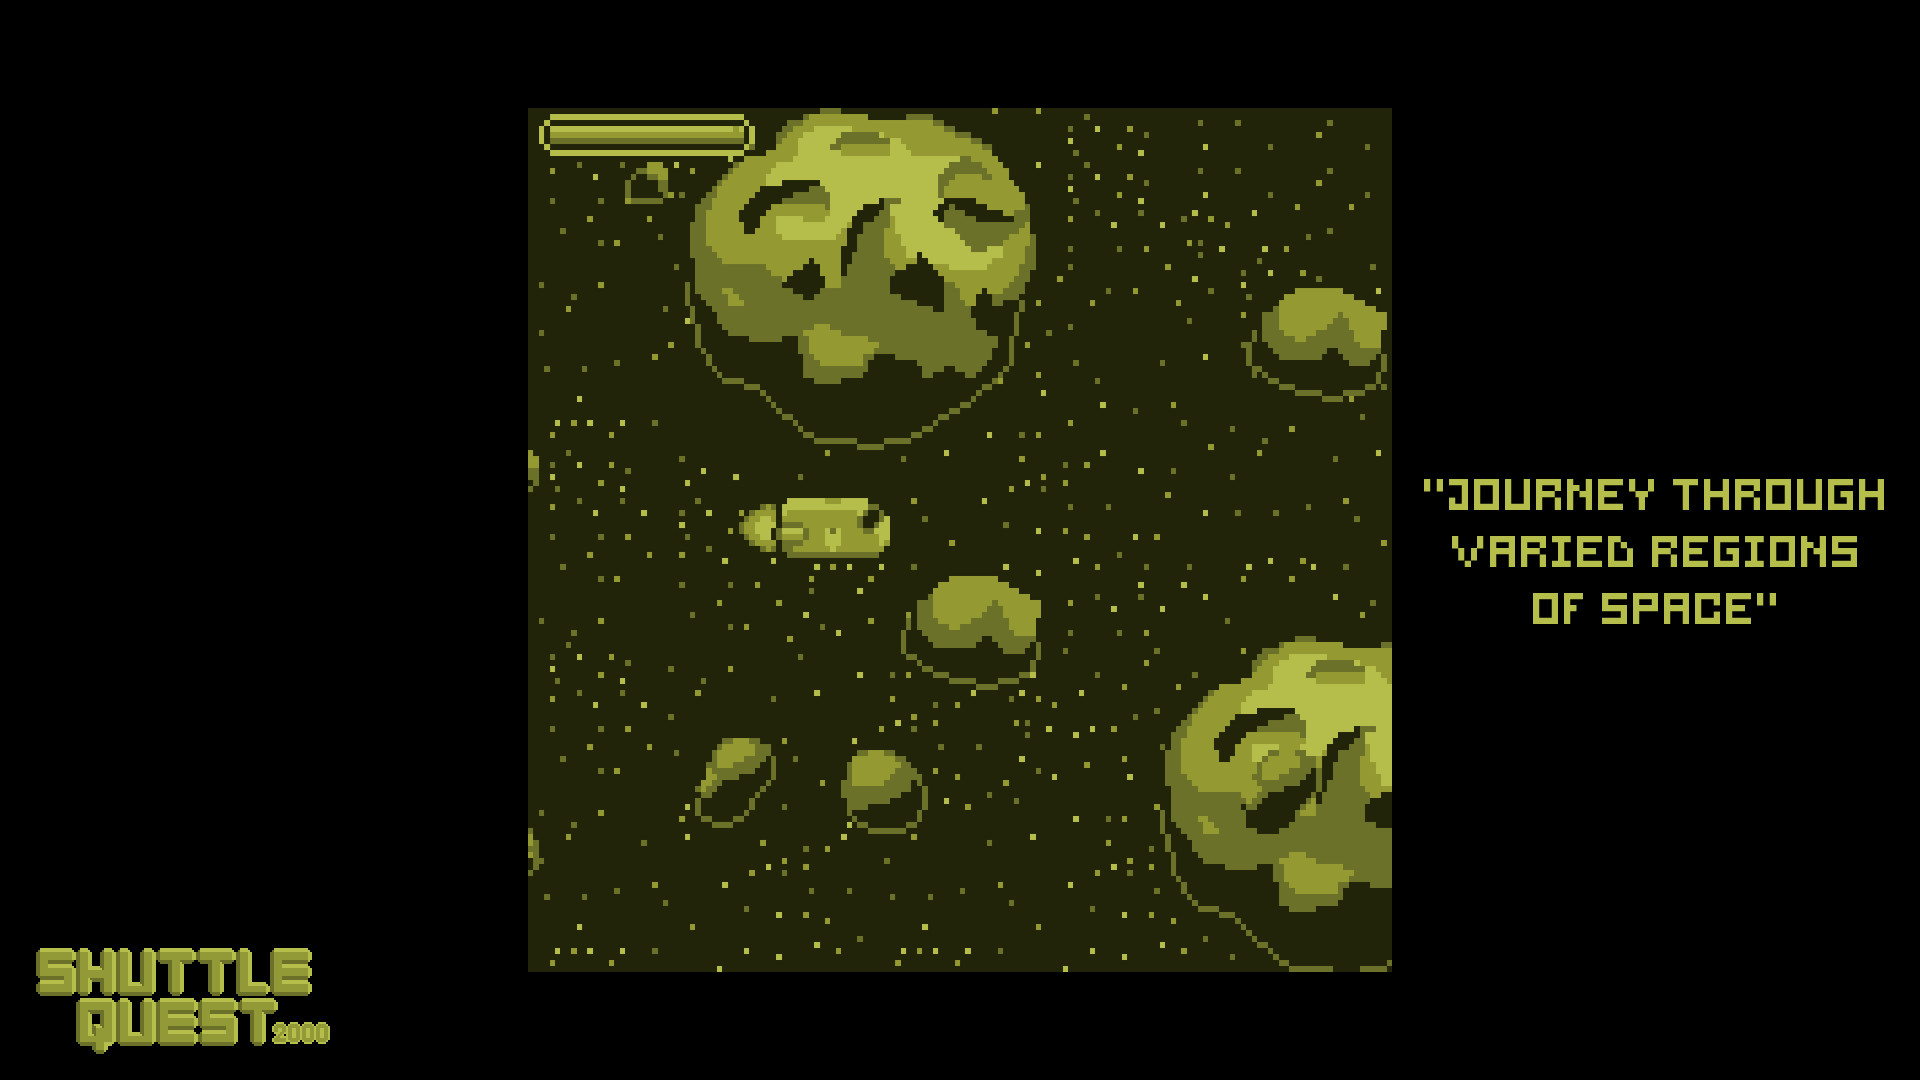 Screenshot of Shuttle Quest 2000